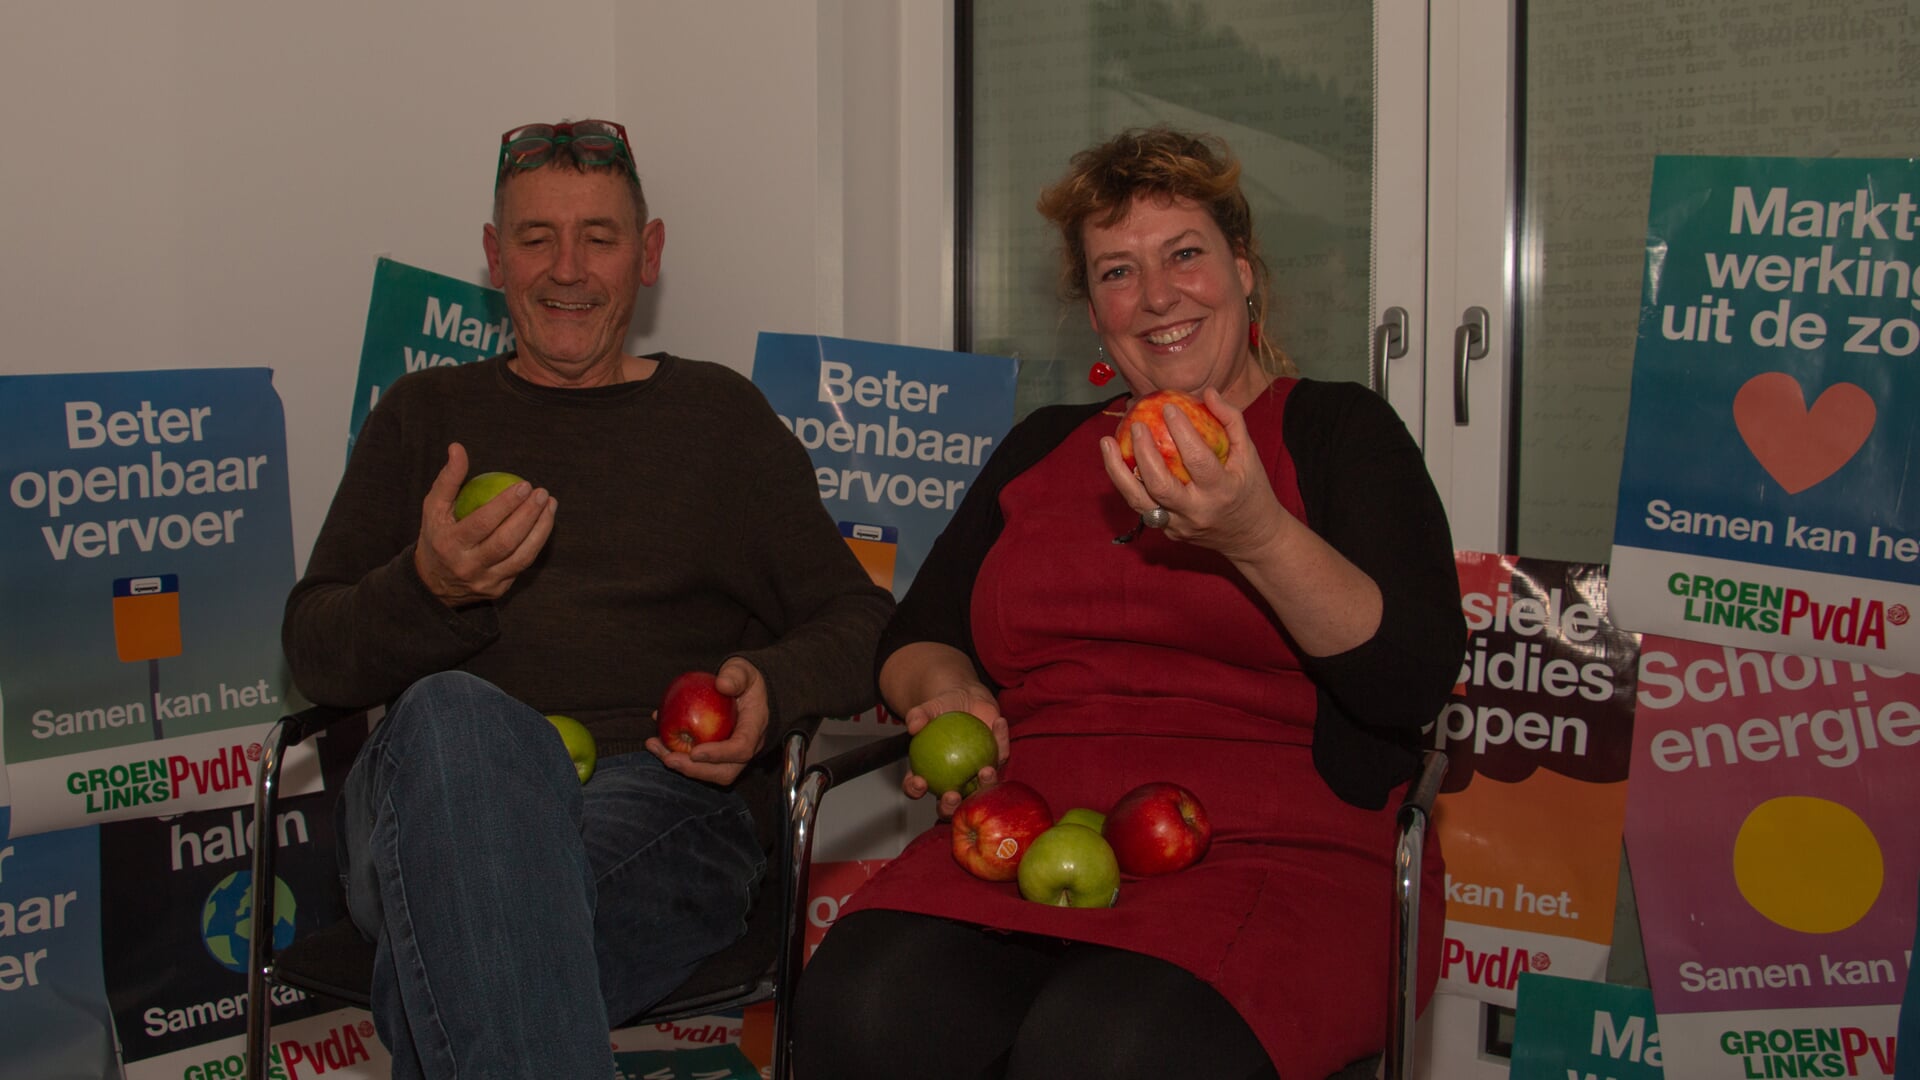 Fractievoorzitters Ulrike ter Braak van GL en Luuk Preijde van PvdA gebruiken posters om te laten weten waar ze samen voor staan, en delen geen rozen uit maar rode en groene appels. Foto: Liesbeth Spaansen